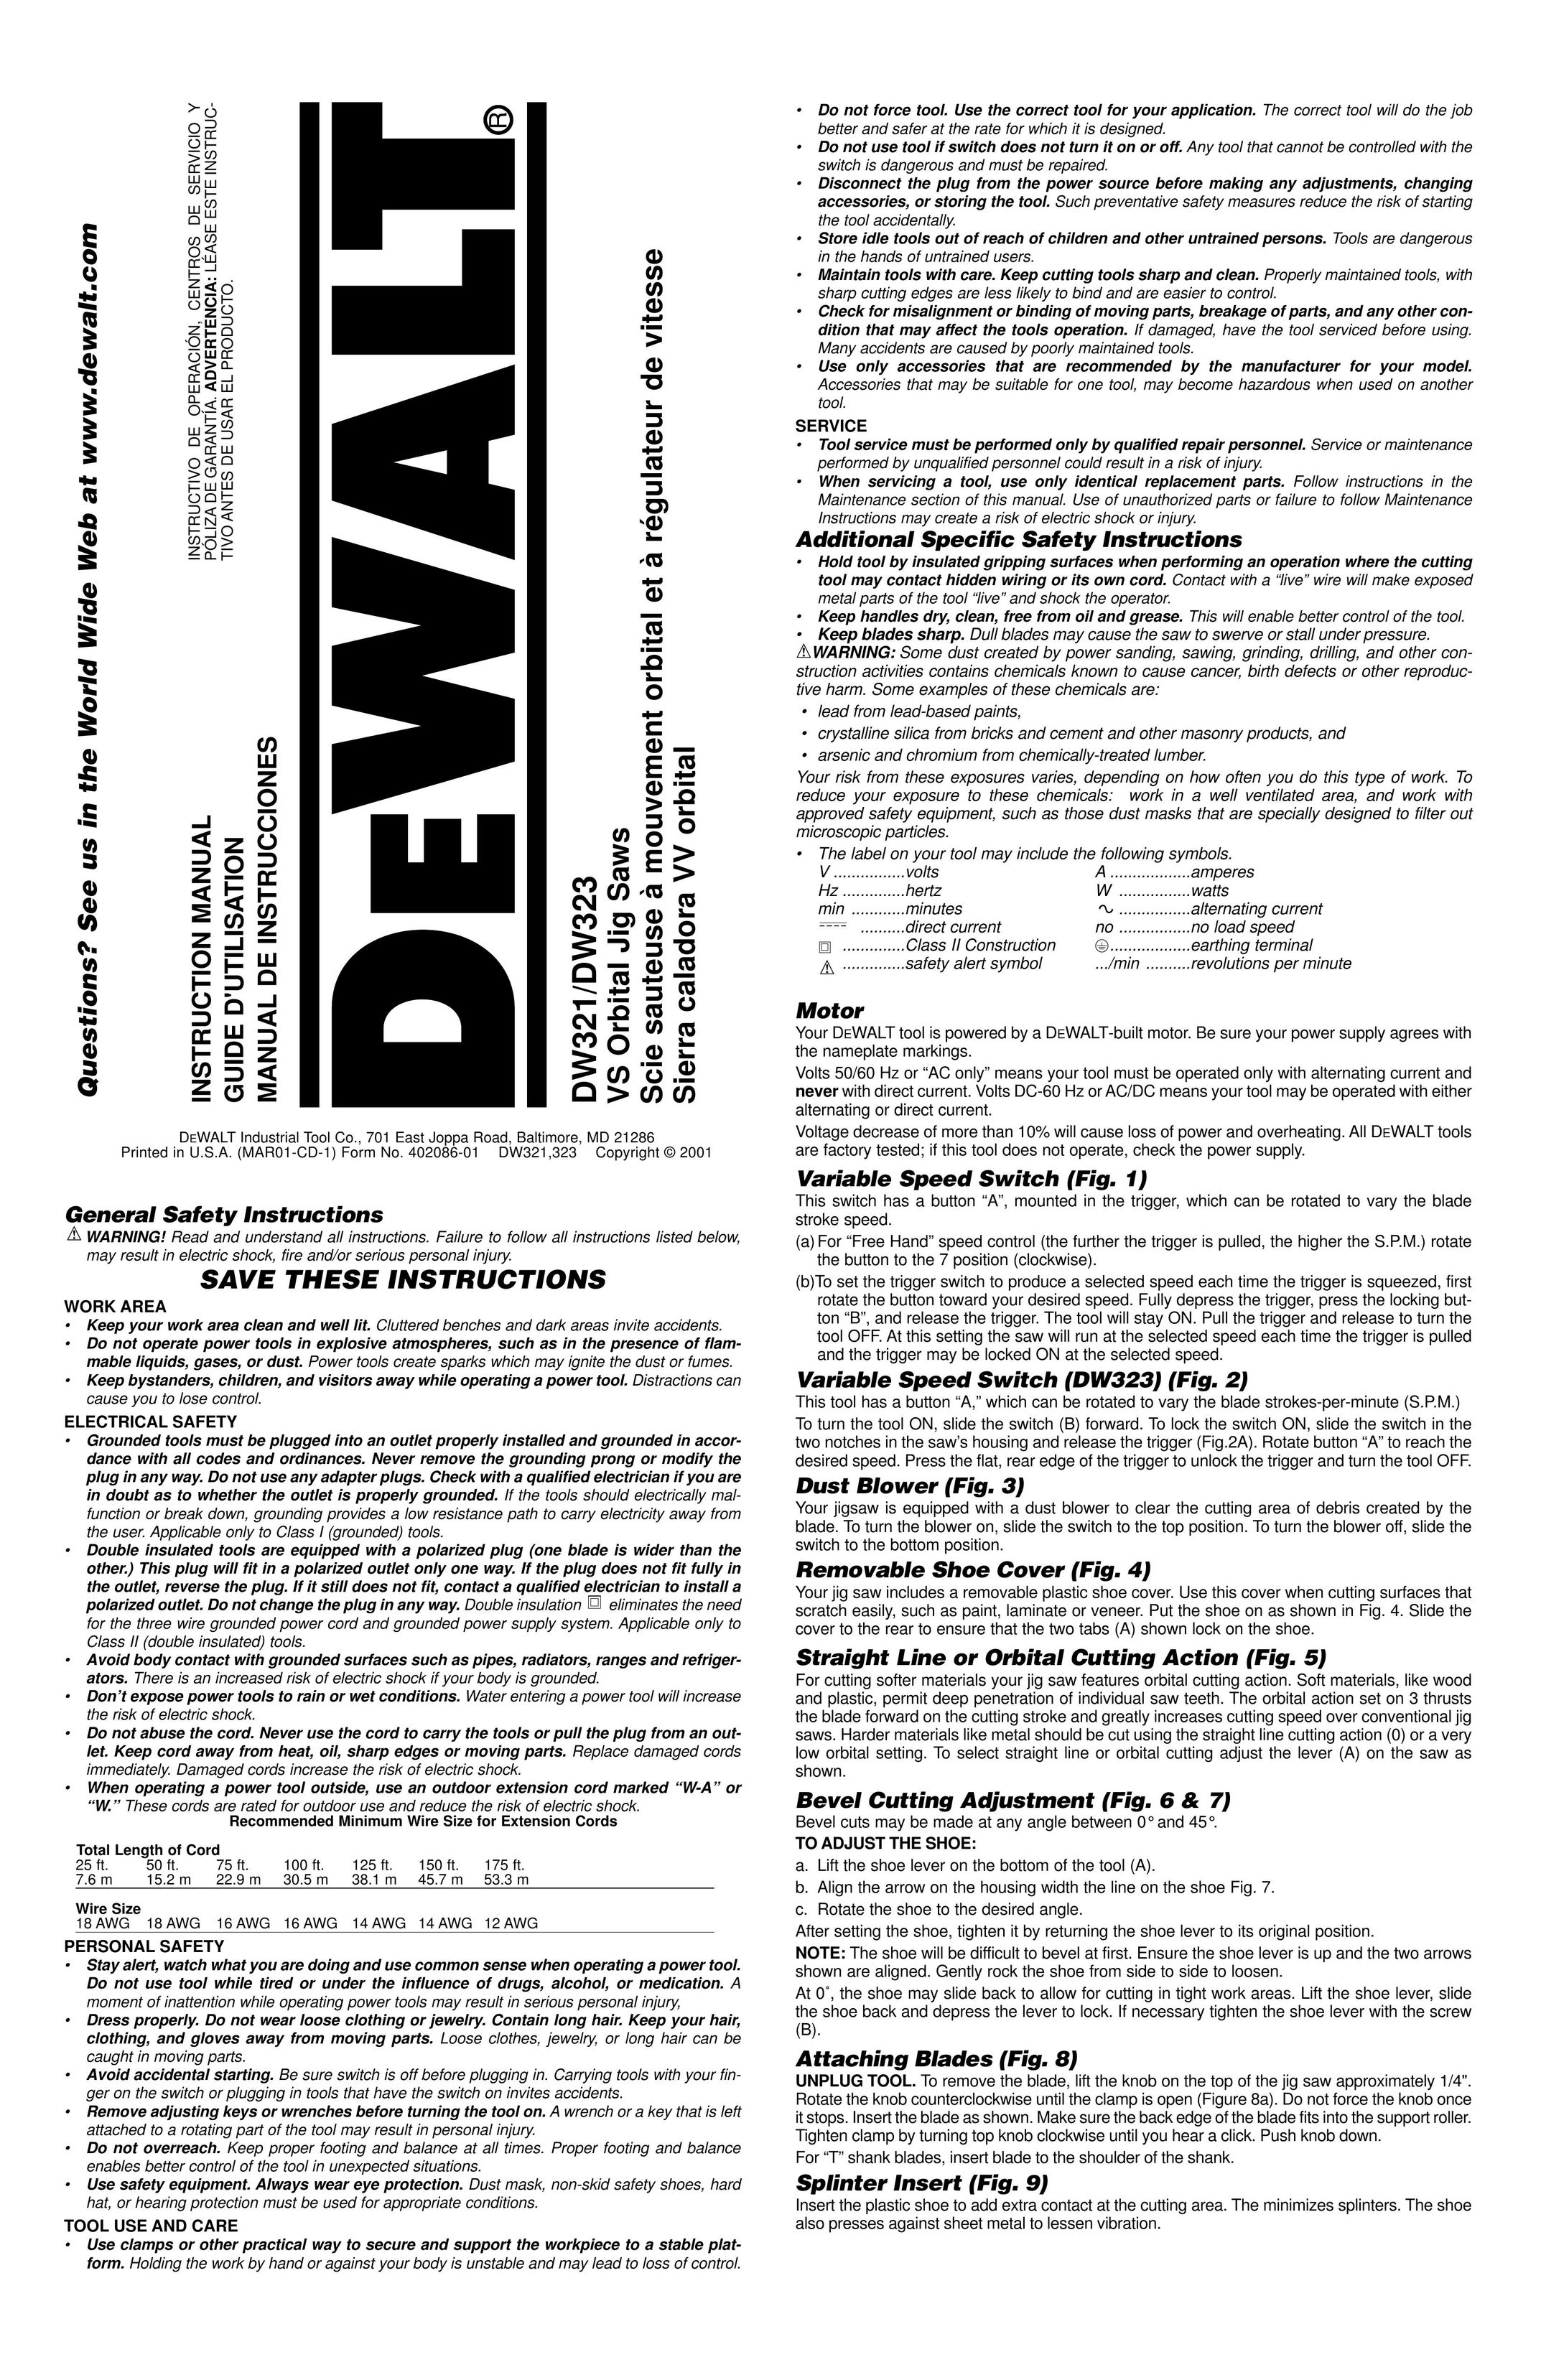 DeWalt DW321/DW323 Saw User Manual